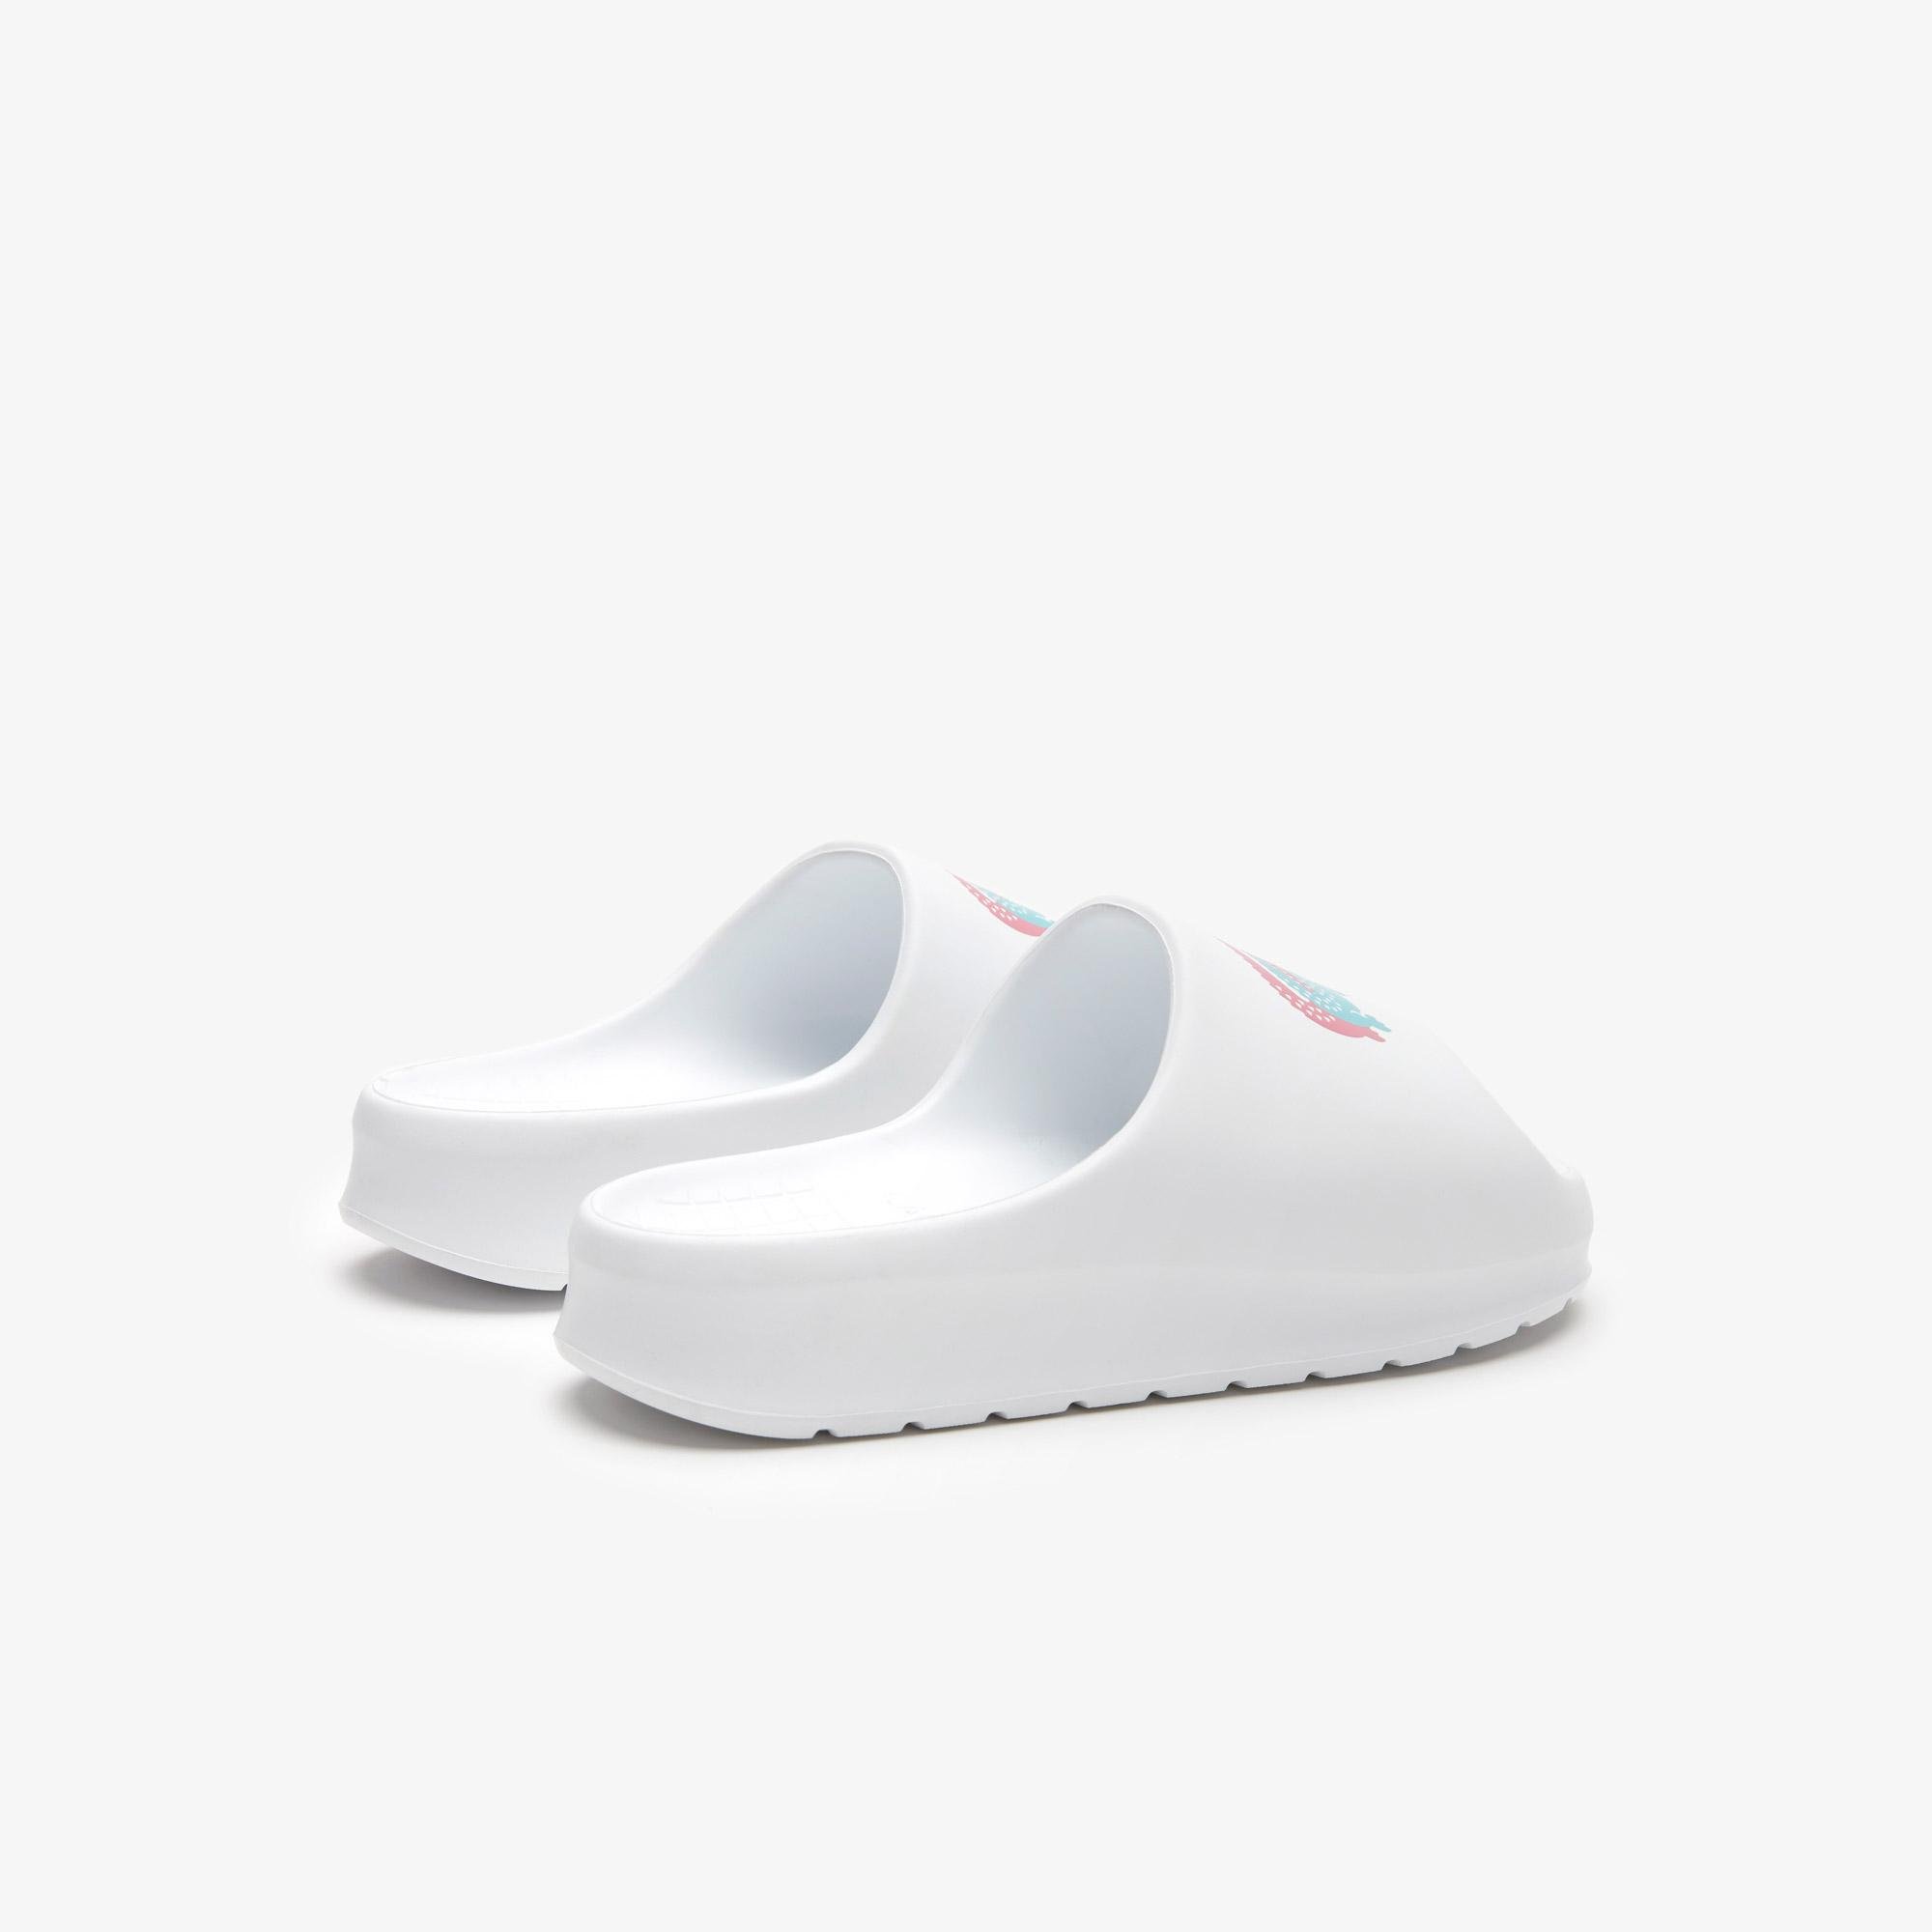 Dámské bílé pantofle Lacoste Serve Slide 2.0